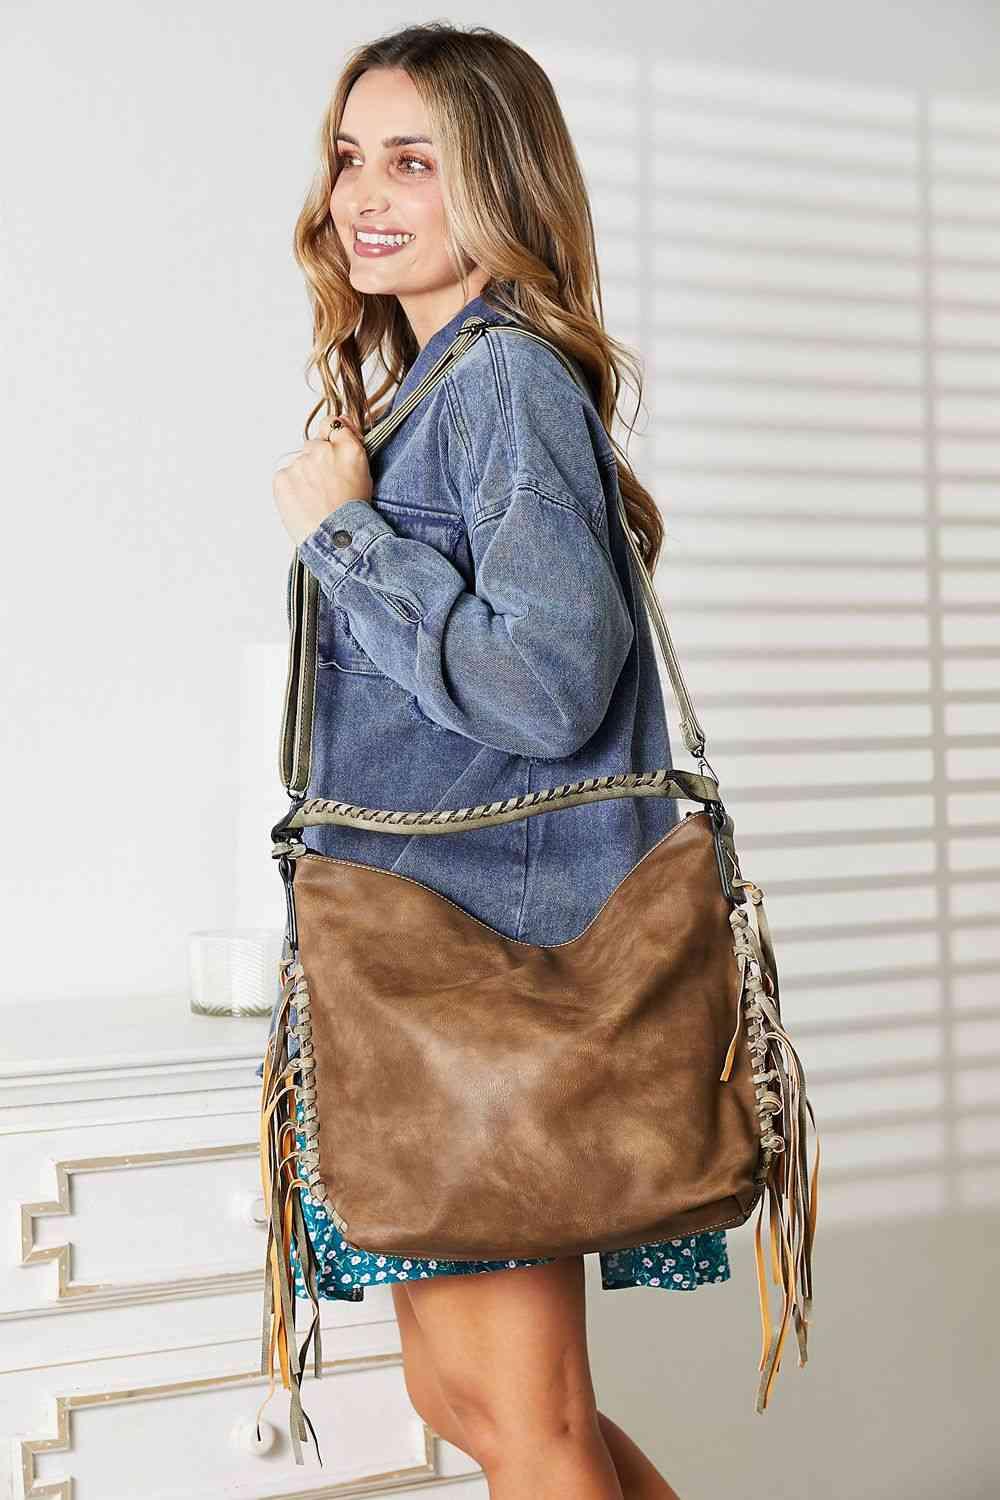 SHOMICO PU Leather Fringe Detail Shoulder Bag - Happily Ever Atchison Shop Co.